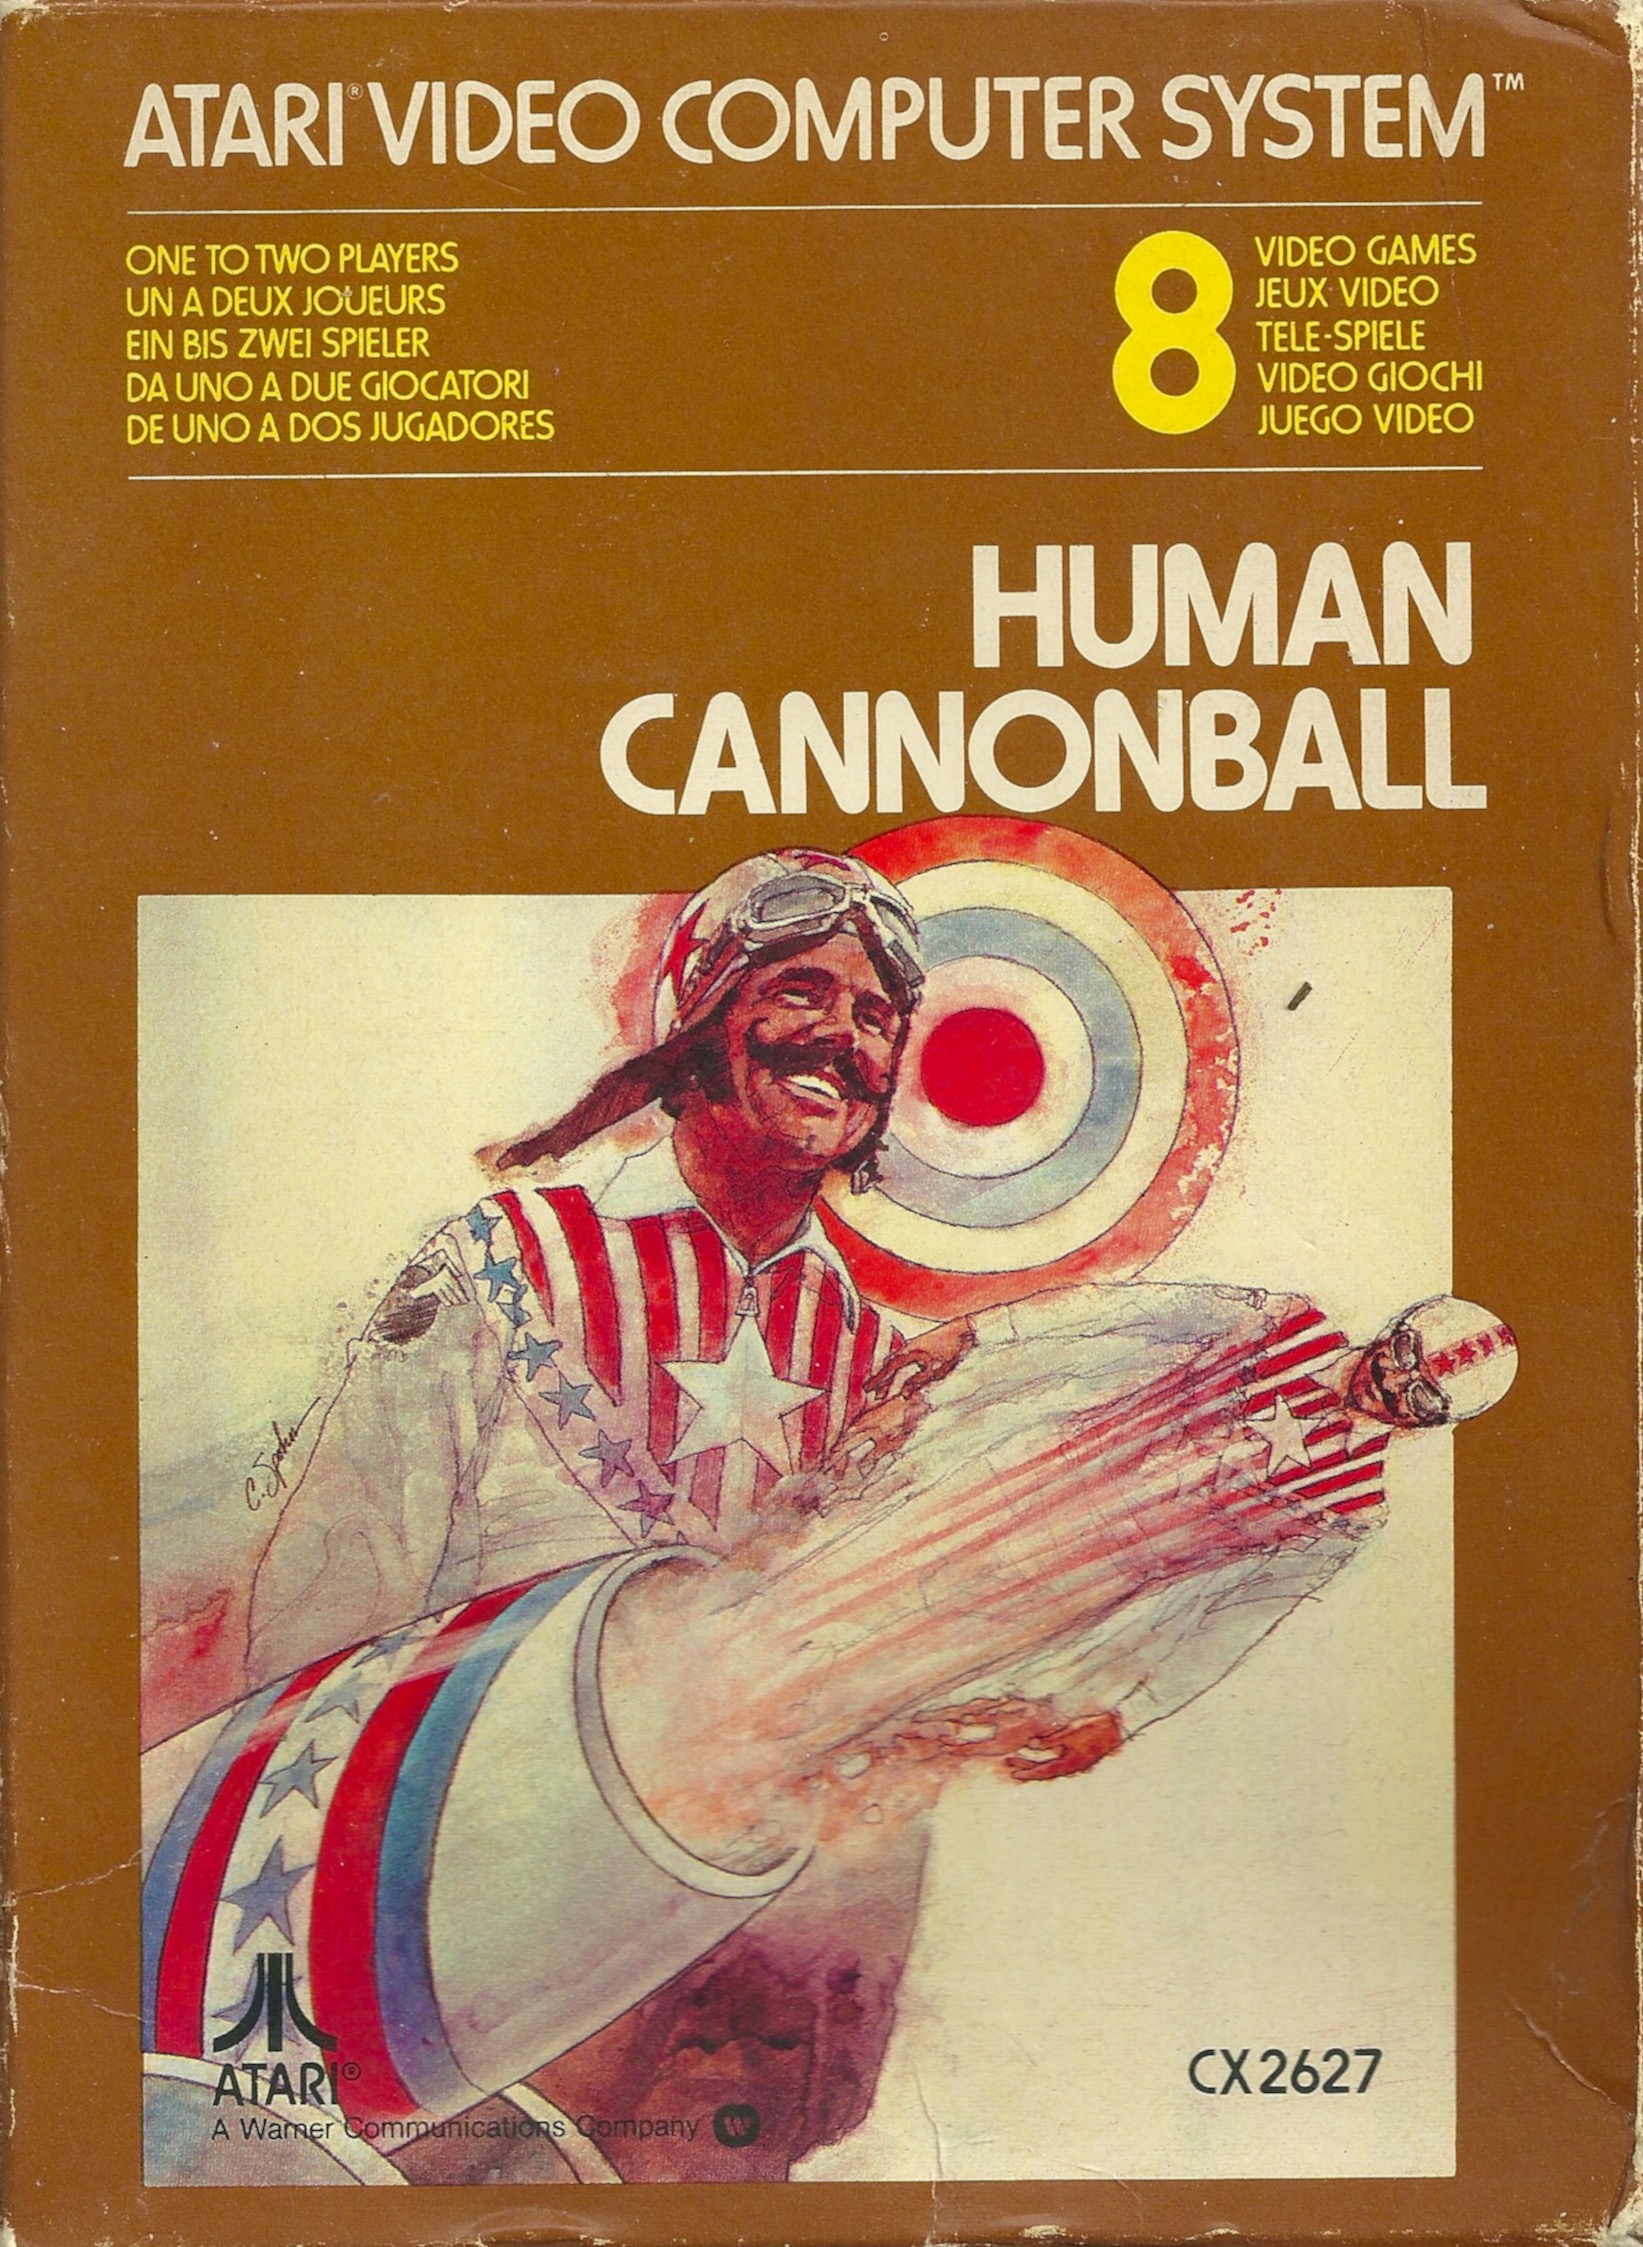 Human Cannonball (Atari 2600)